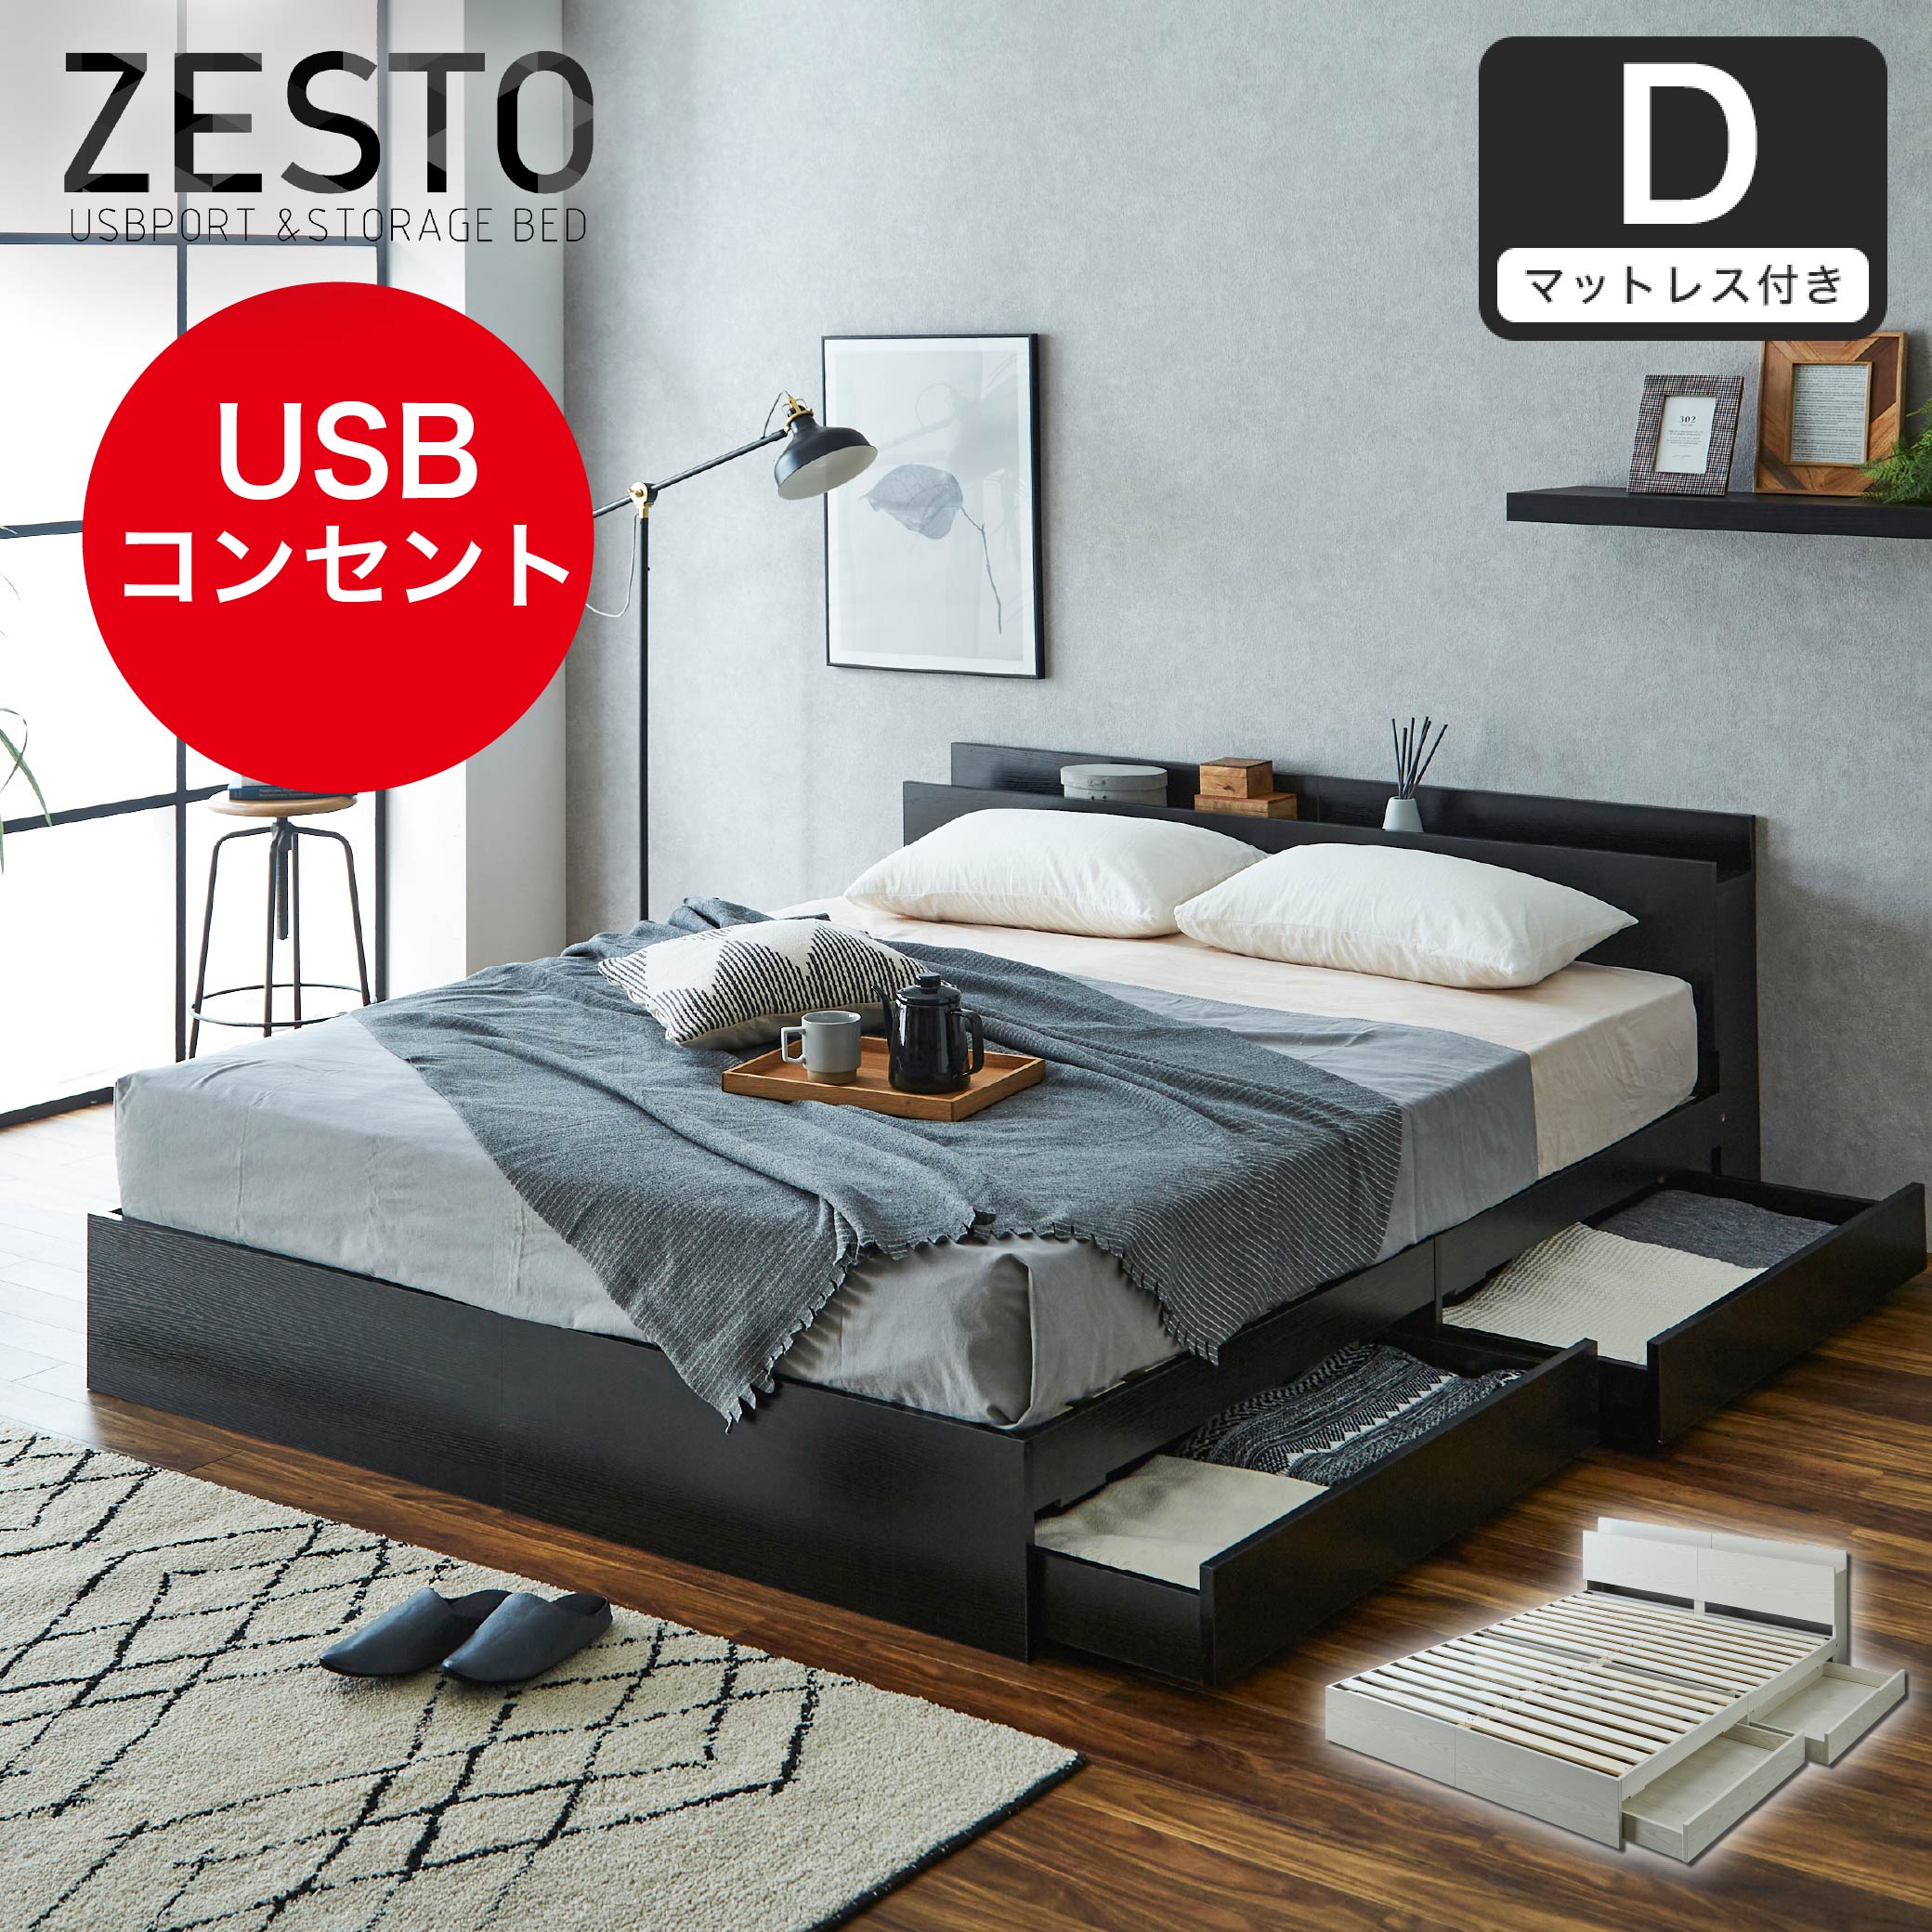 ベッド 収納 ダブルベッド マットレス付き 収納付き USBコンセント付き zesto ゼスト ダブル 高密度バリューポケットコイルマットレス付き  すのこベッド 引き出し付きベッド zesto 木製ベッド